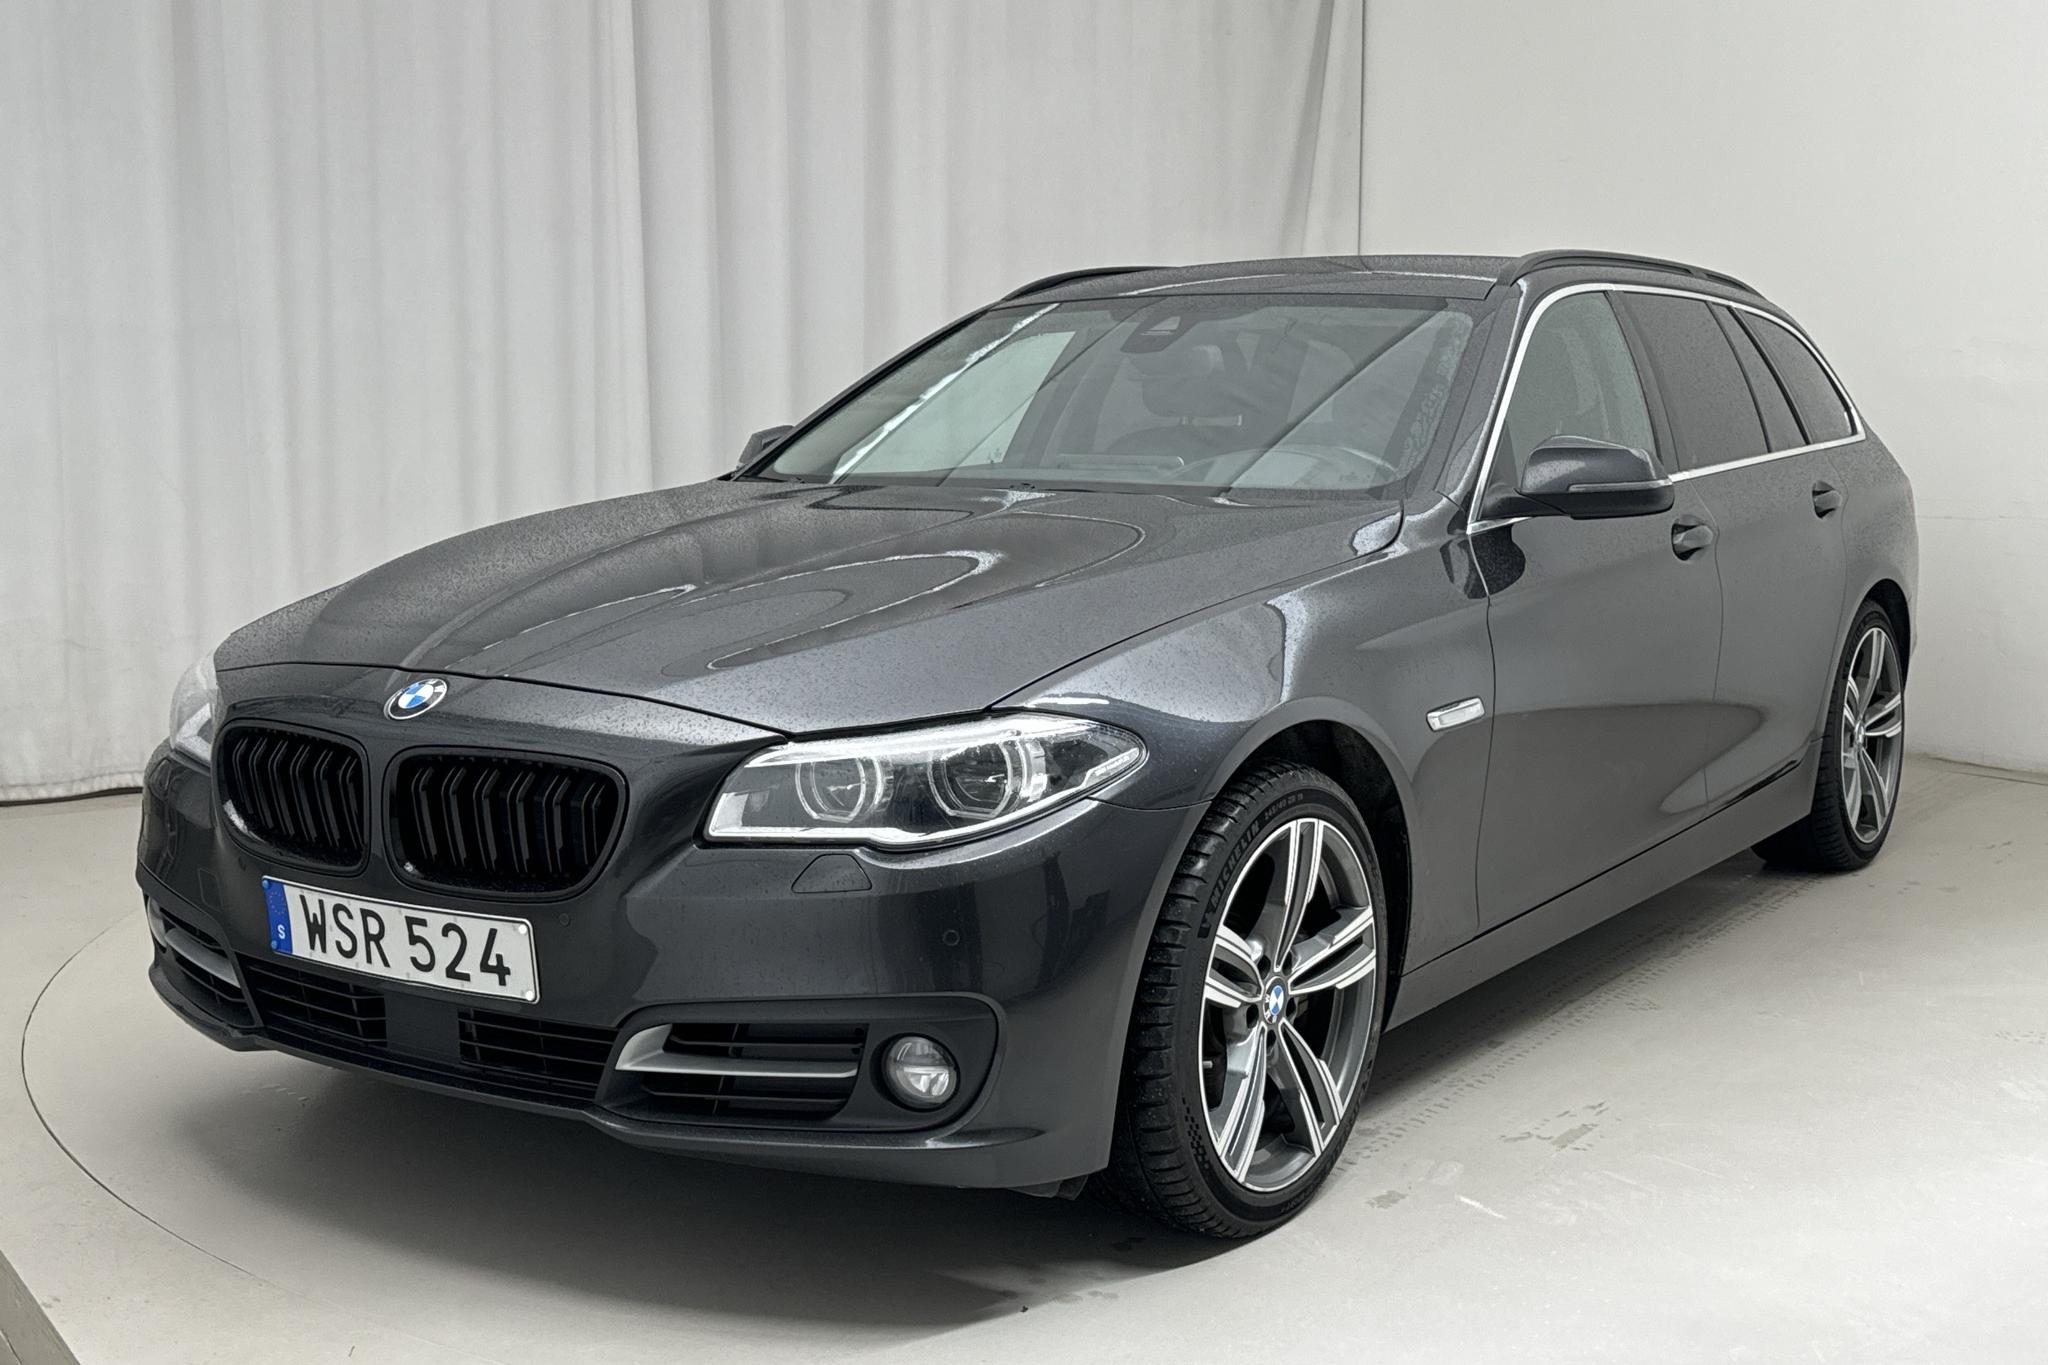 BMW 535d xDrive Touring, F11 (313hk) - 132 600 km - Automatic - gray - 2015